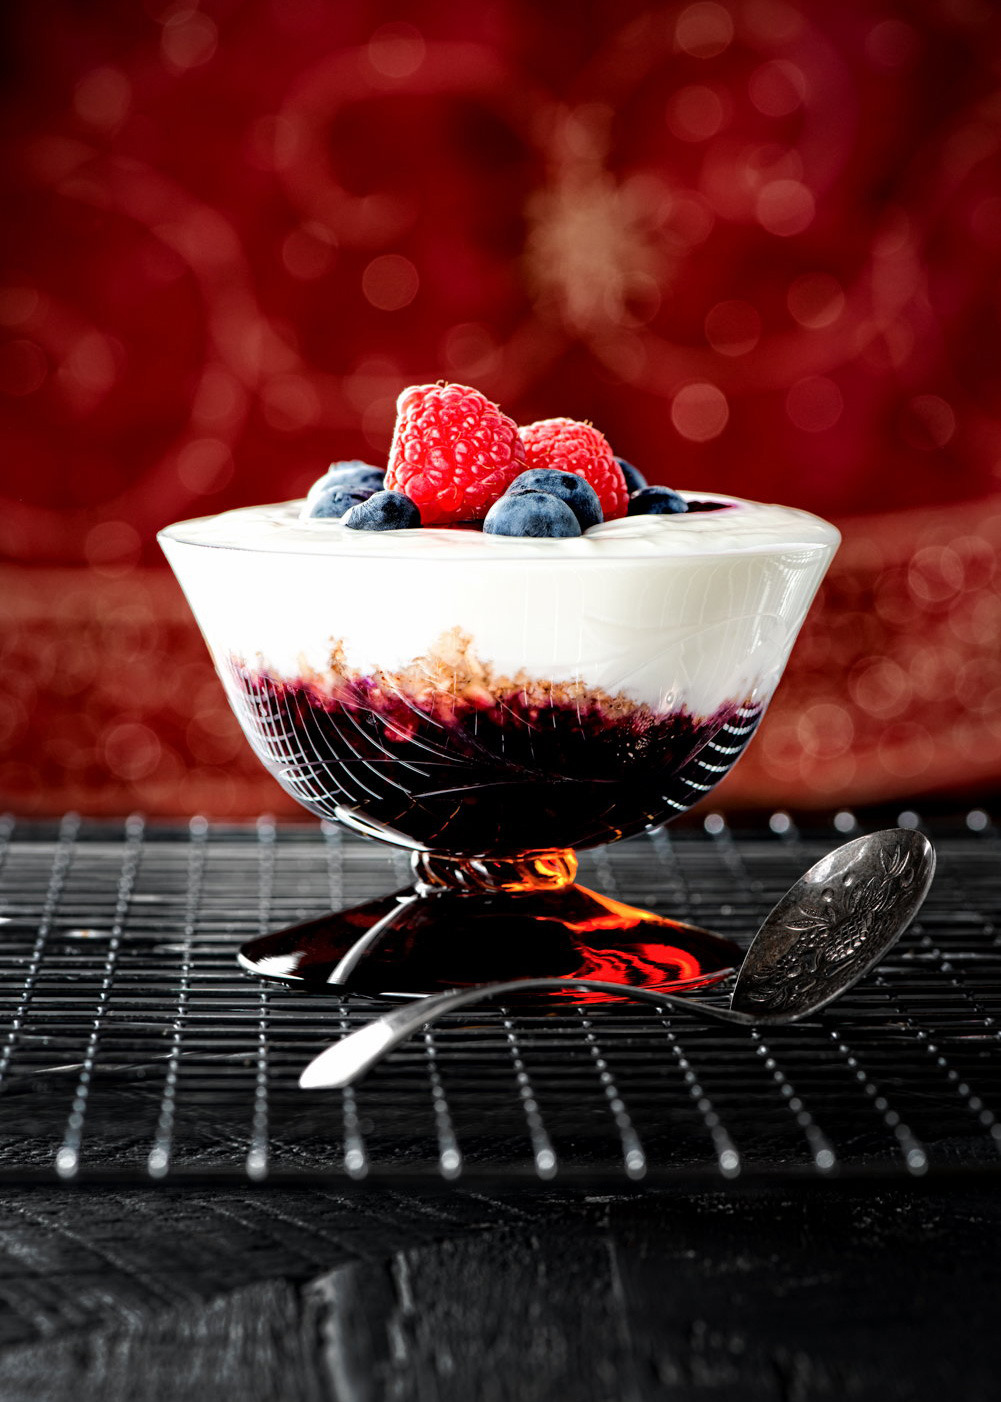 Wild Berry Jam and Yoghurt Desert Source HC